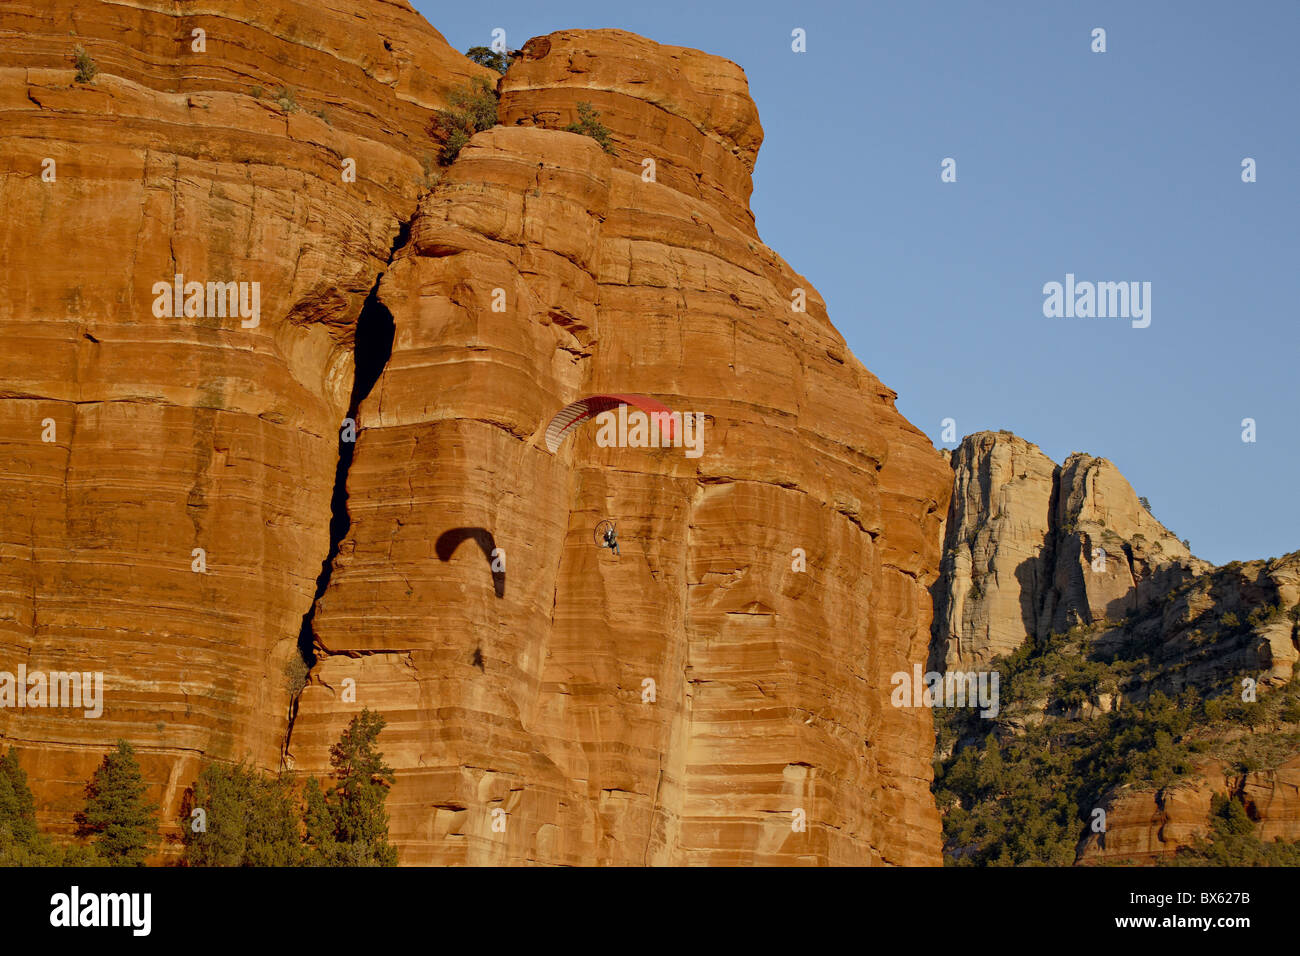 Ein Gleitschirm fliegt vorbei an einer roten Felsformation, Coconino National Forest, Arizona, Vereinigte Staaten von Amerika, Nordamerika Stockfoto